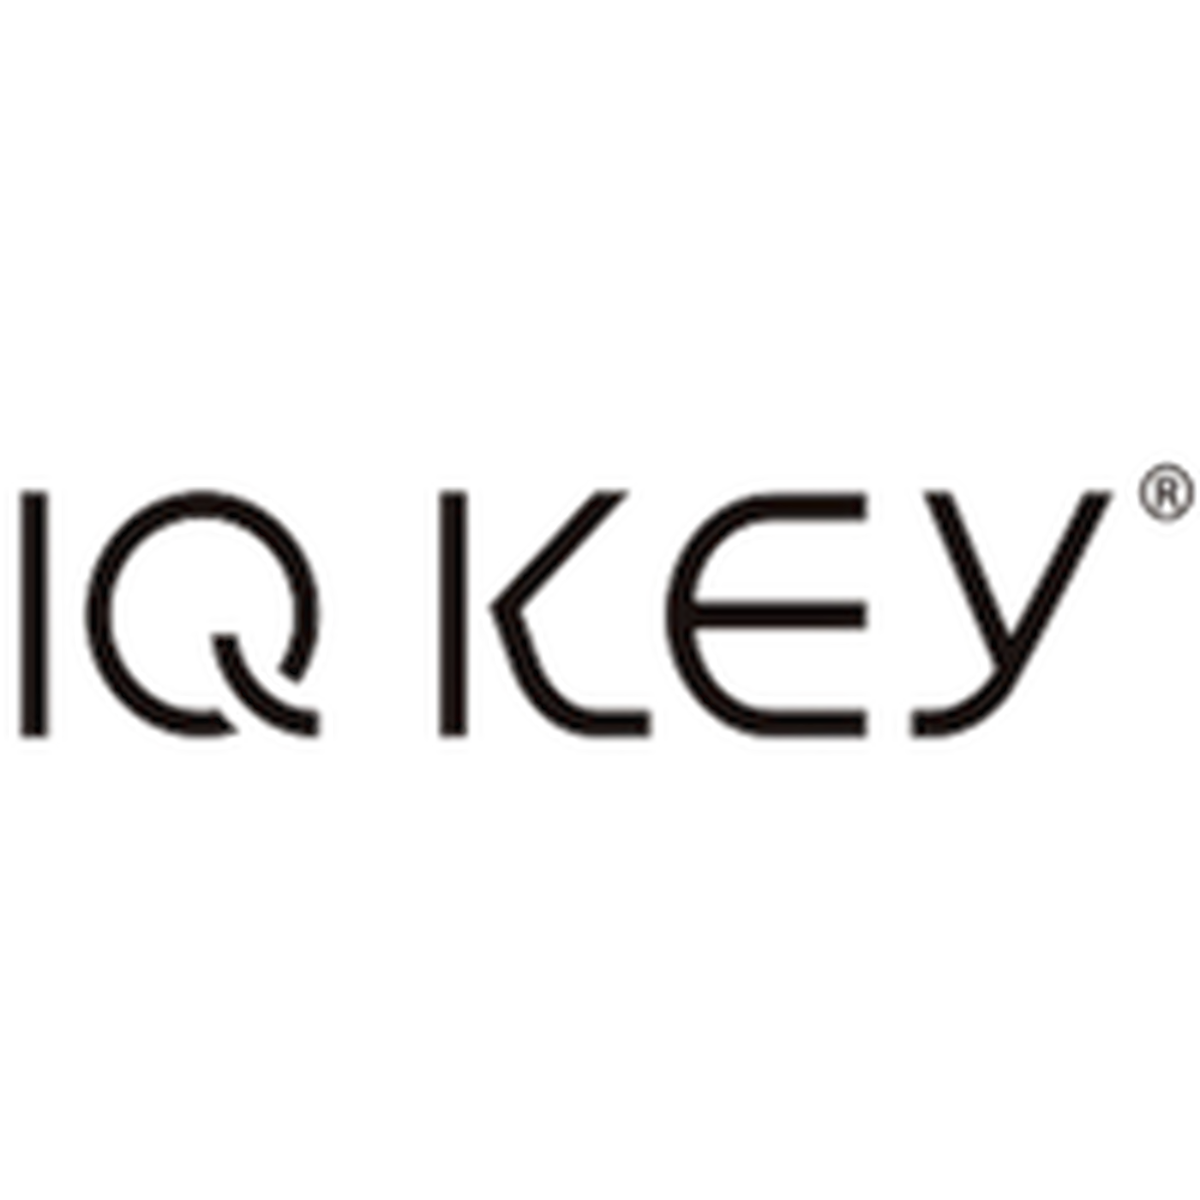 About Iq Key公式ショップ